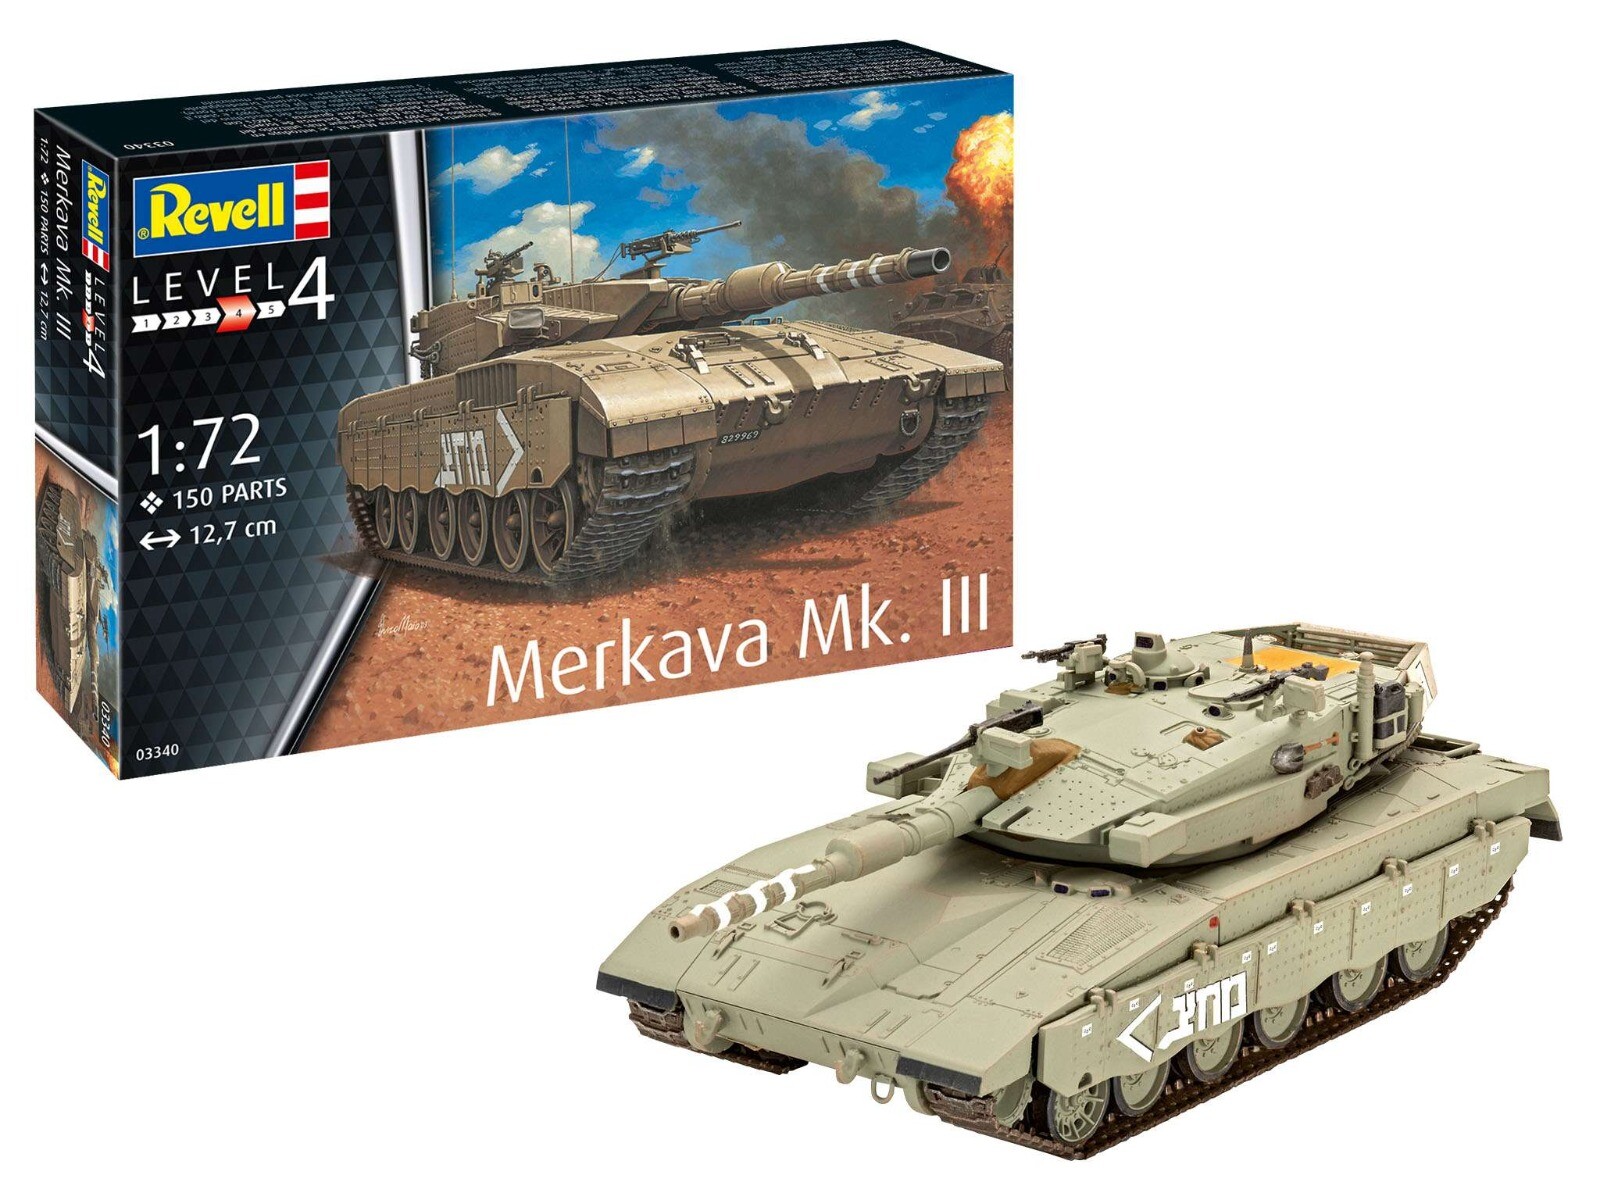 Revell 1/72 Merkava Mk. III